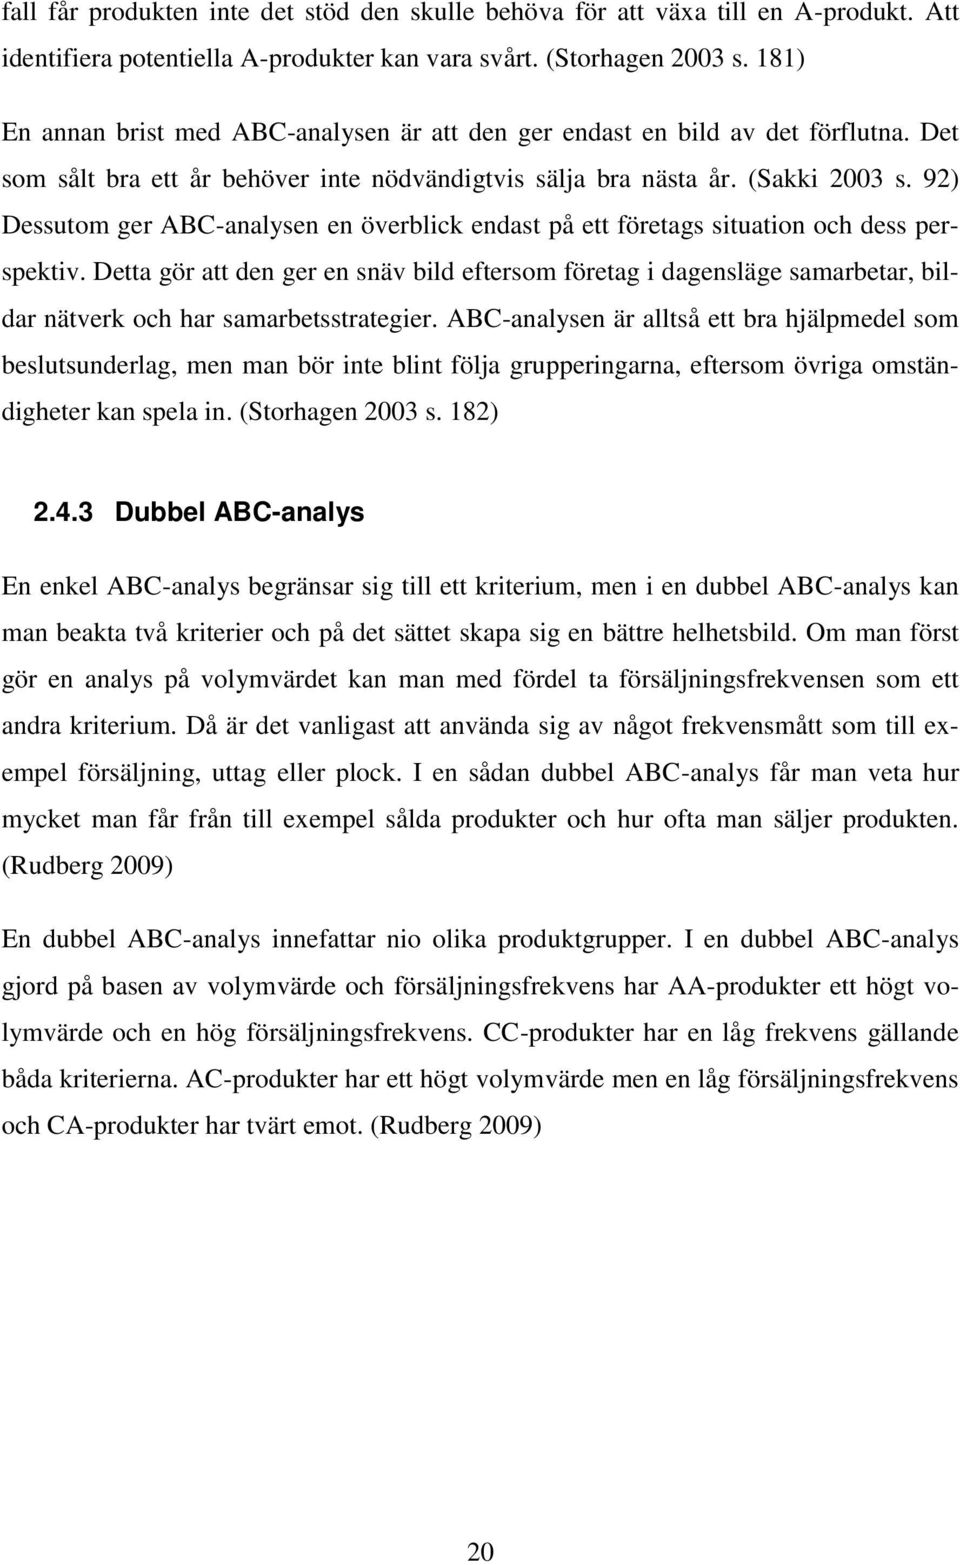 92) Dessutom ger ABC-analysen en överblick endast på ett företags situation och dess perspektiv.